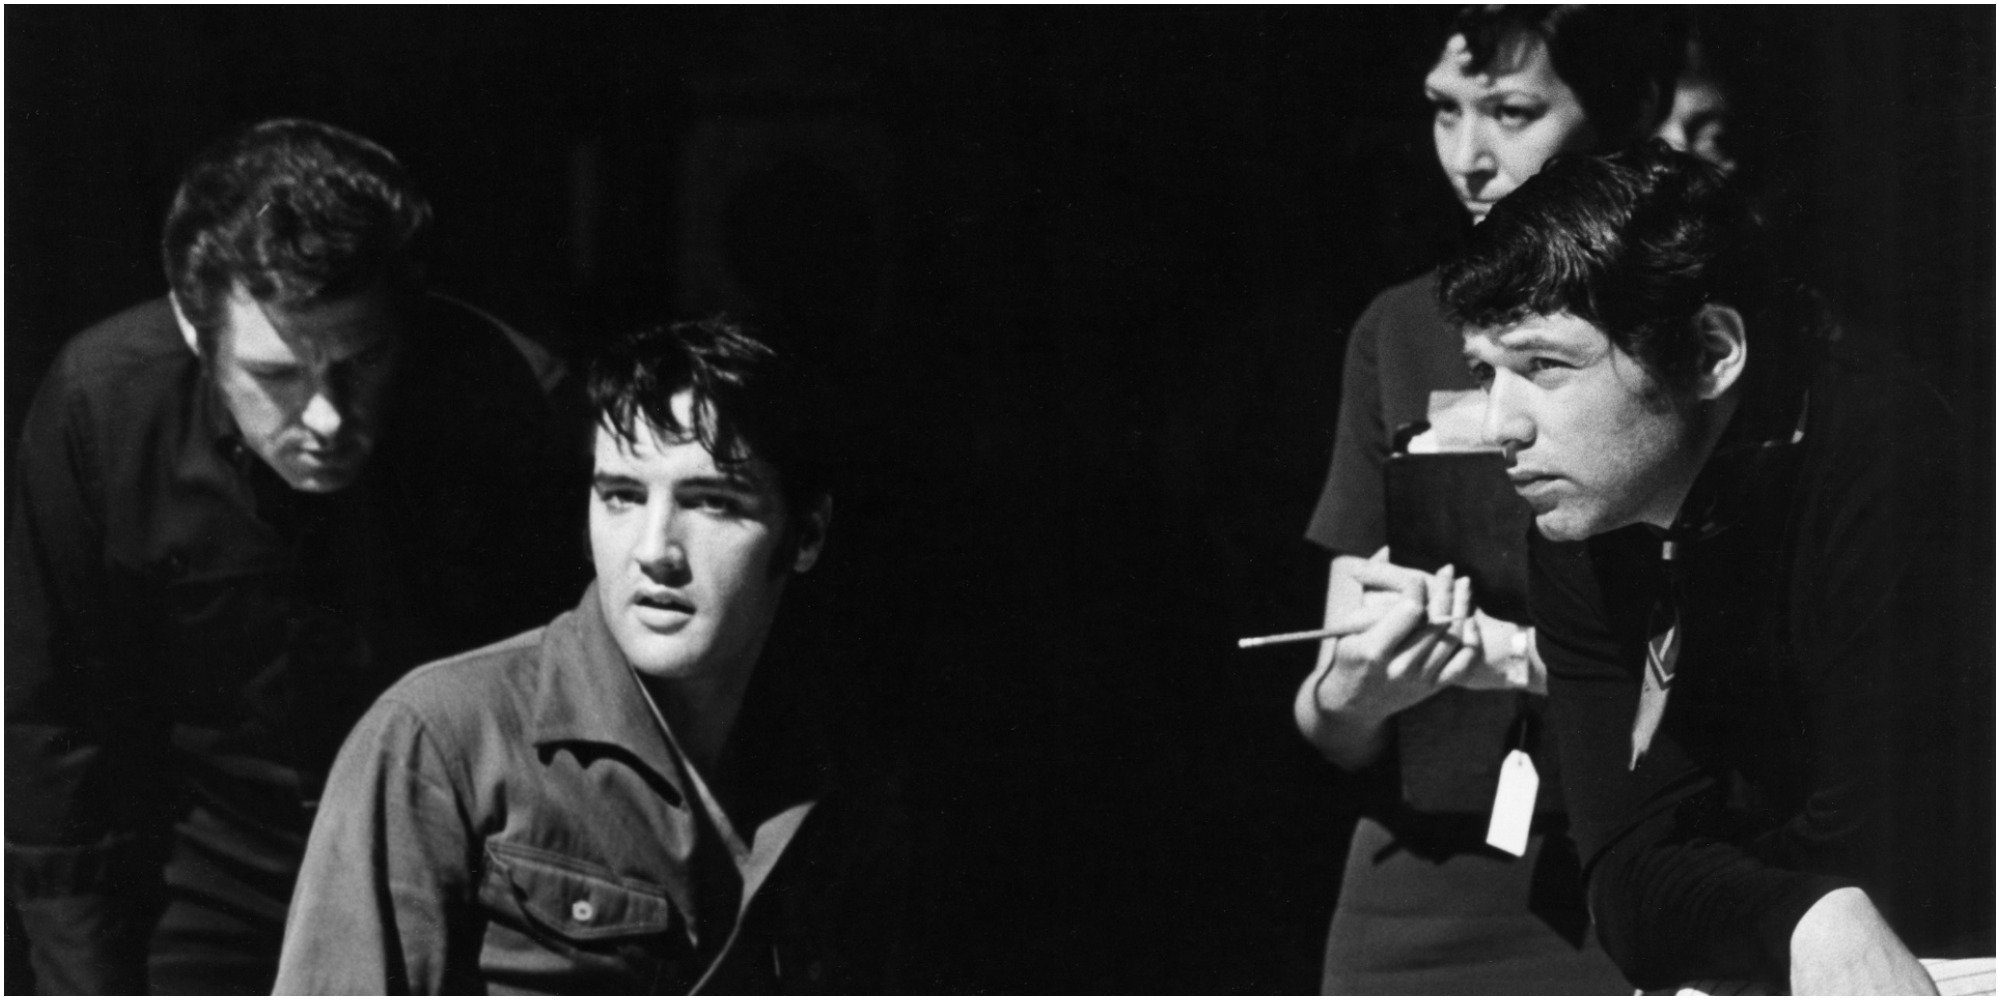 Charlie Hodge, Elvis Presley, and Steve Binder on the set of Presley's 1968 comeback special.